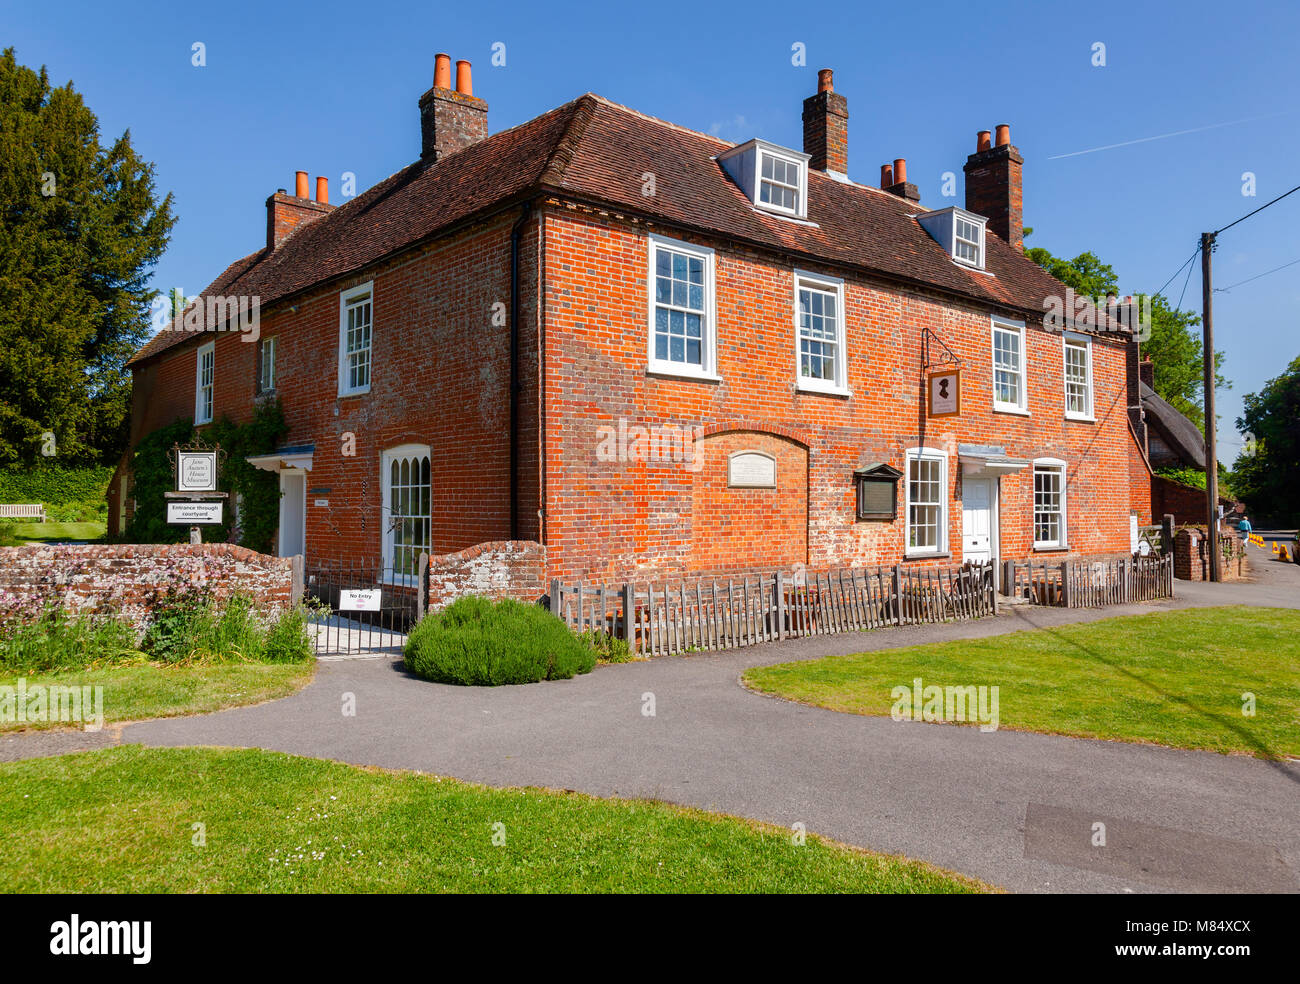 Chawton Cottage, una casa-museo della scrittrice Jane Austen a Chawton, Hampshire, sud-est dell' Inghilterra, Regno Unito Foto Stock